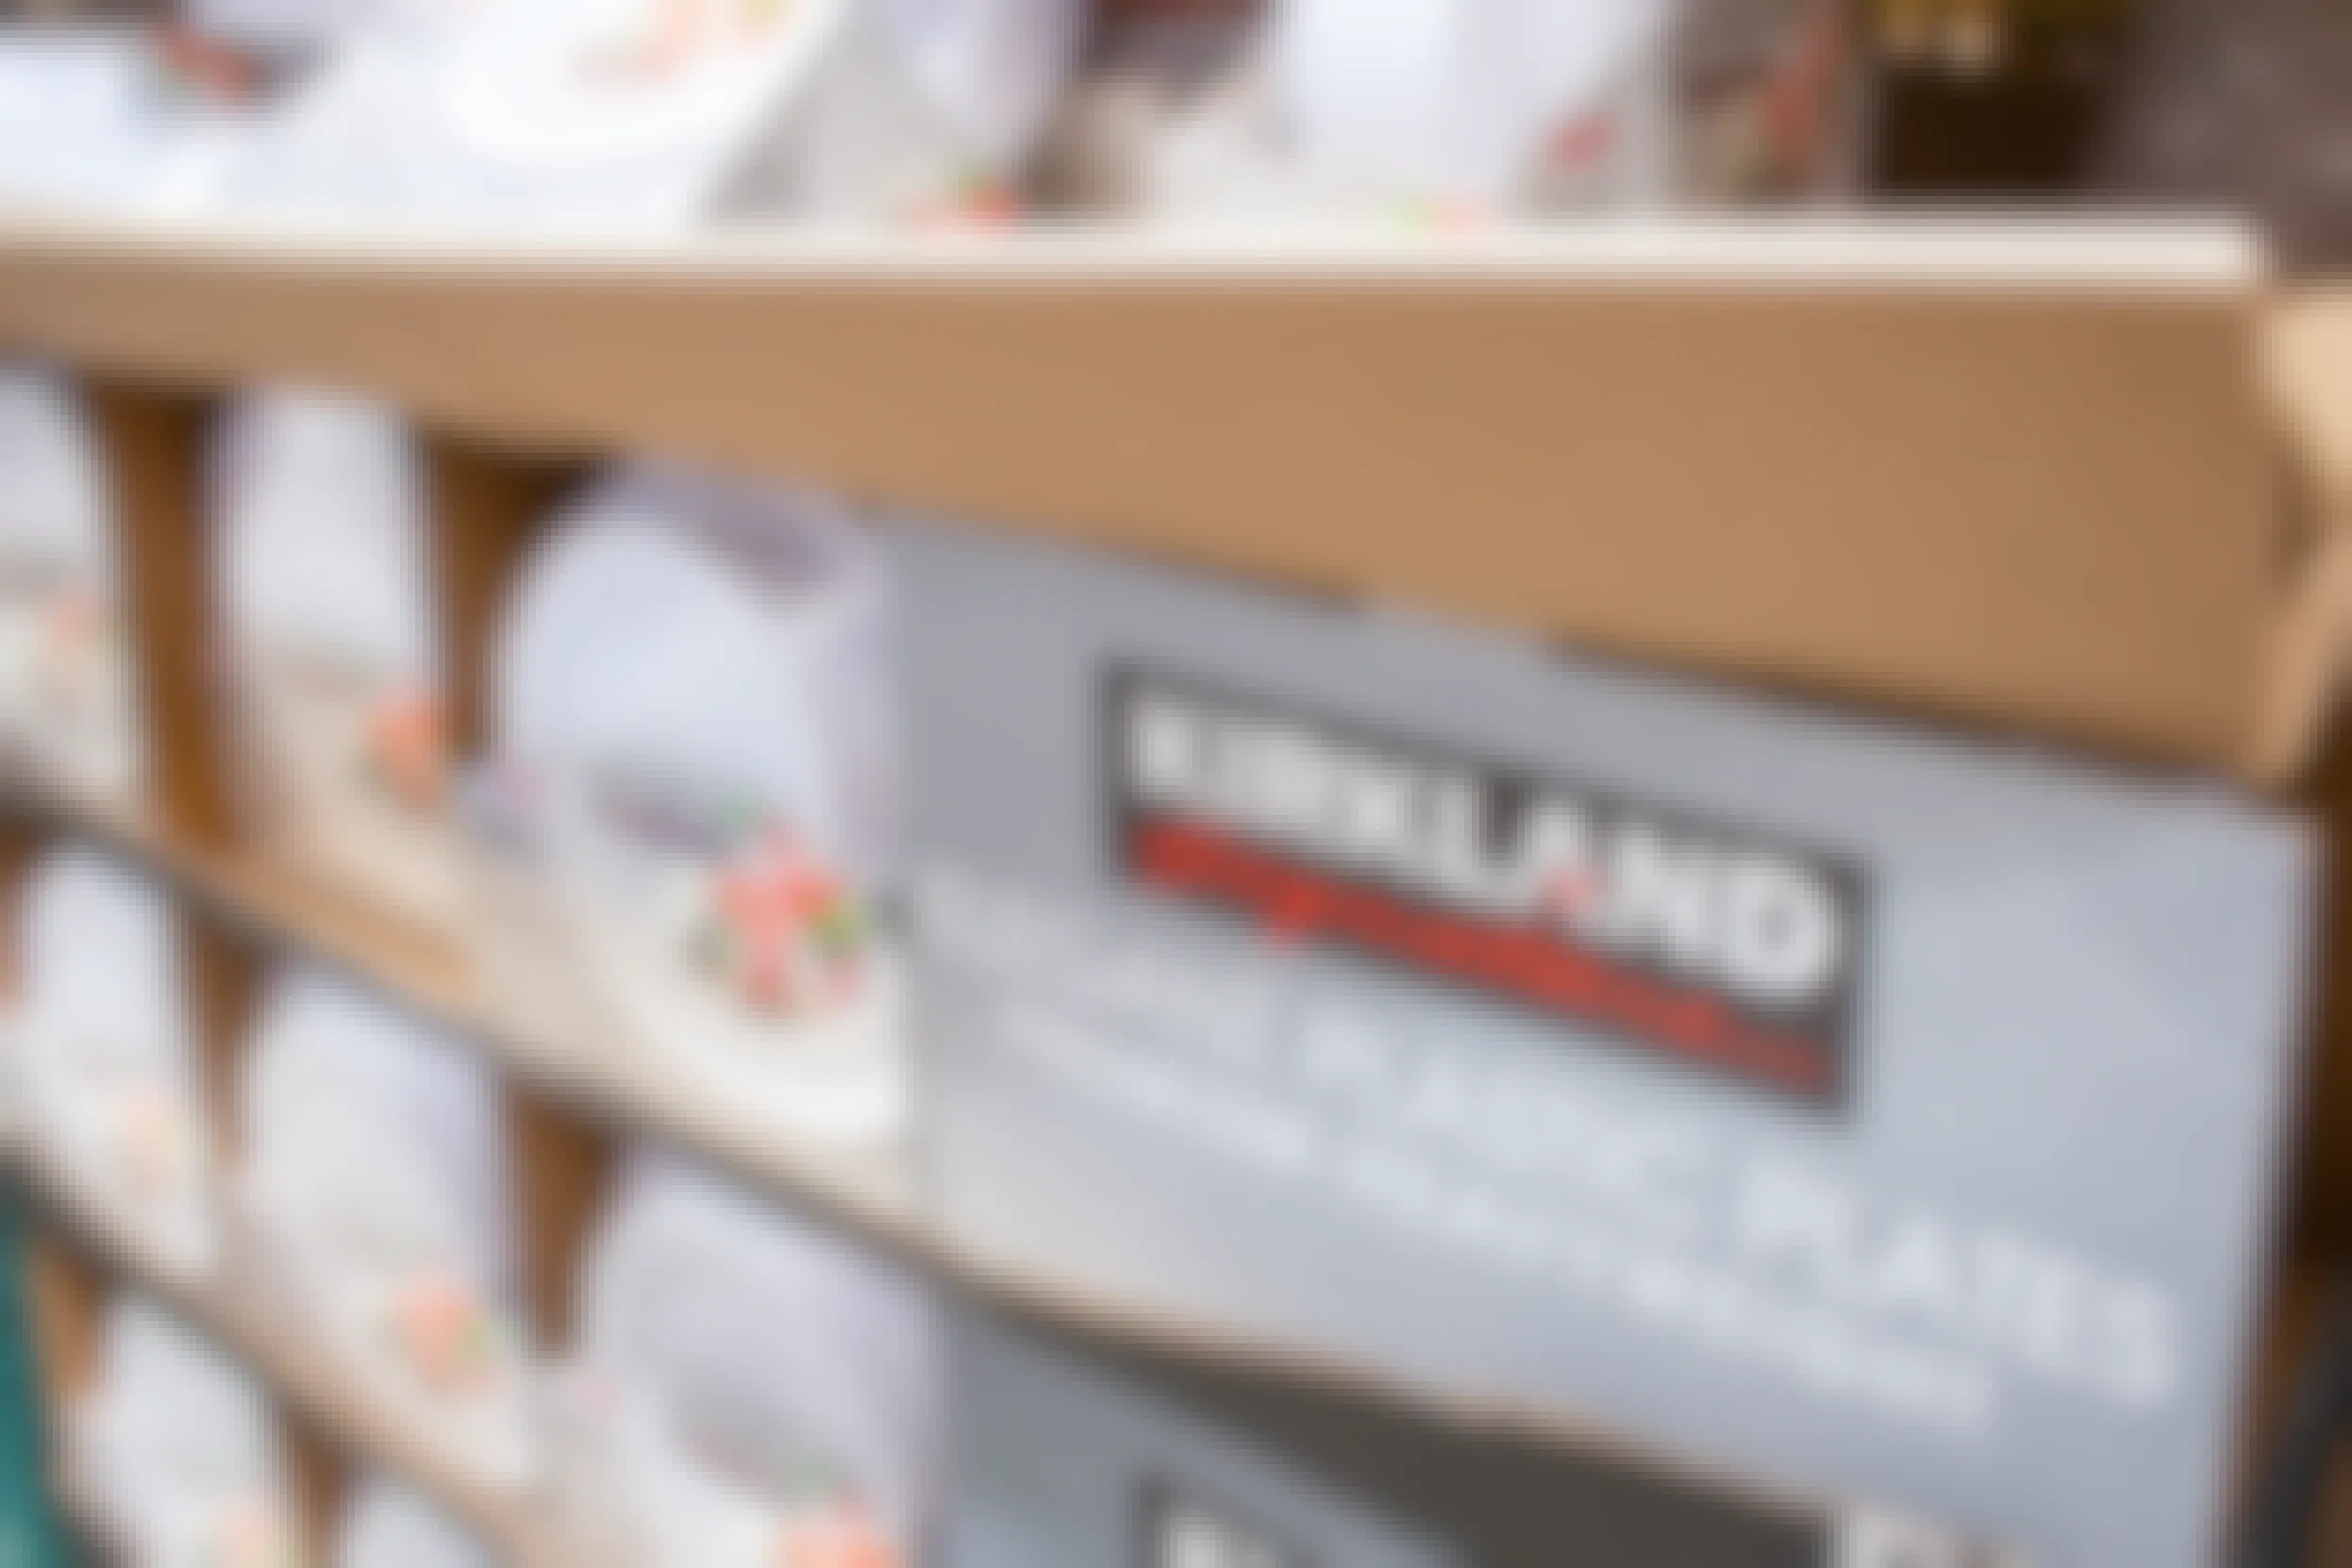 Plastic Kirkland Signature plates stocked on the sales floor